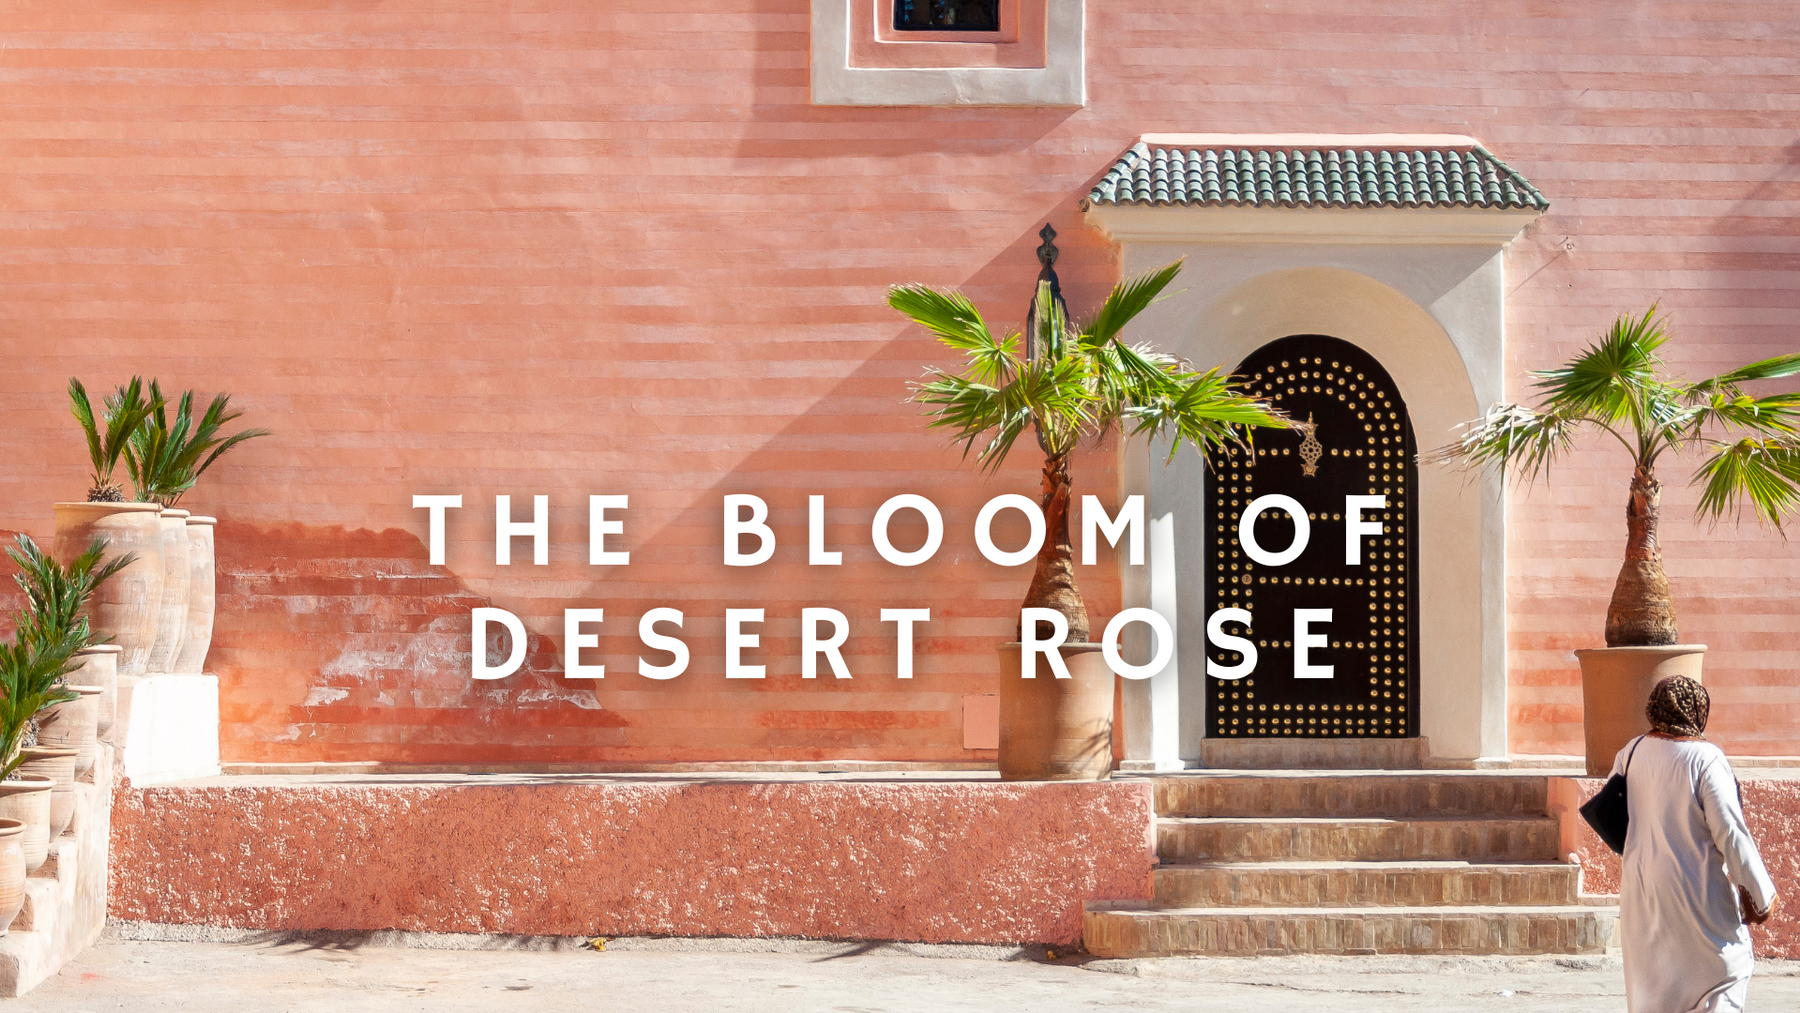 The Bloom of Desert Rose